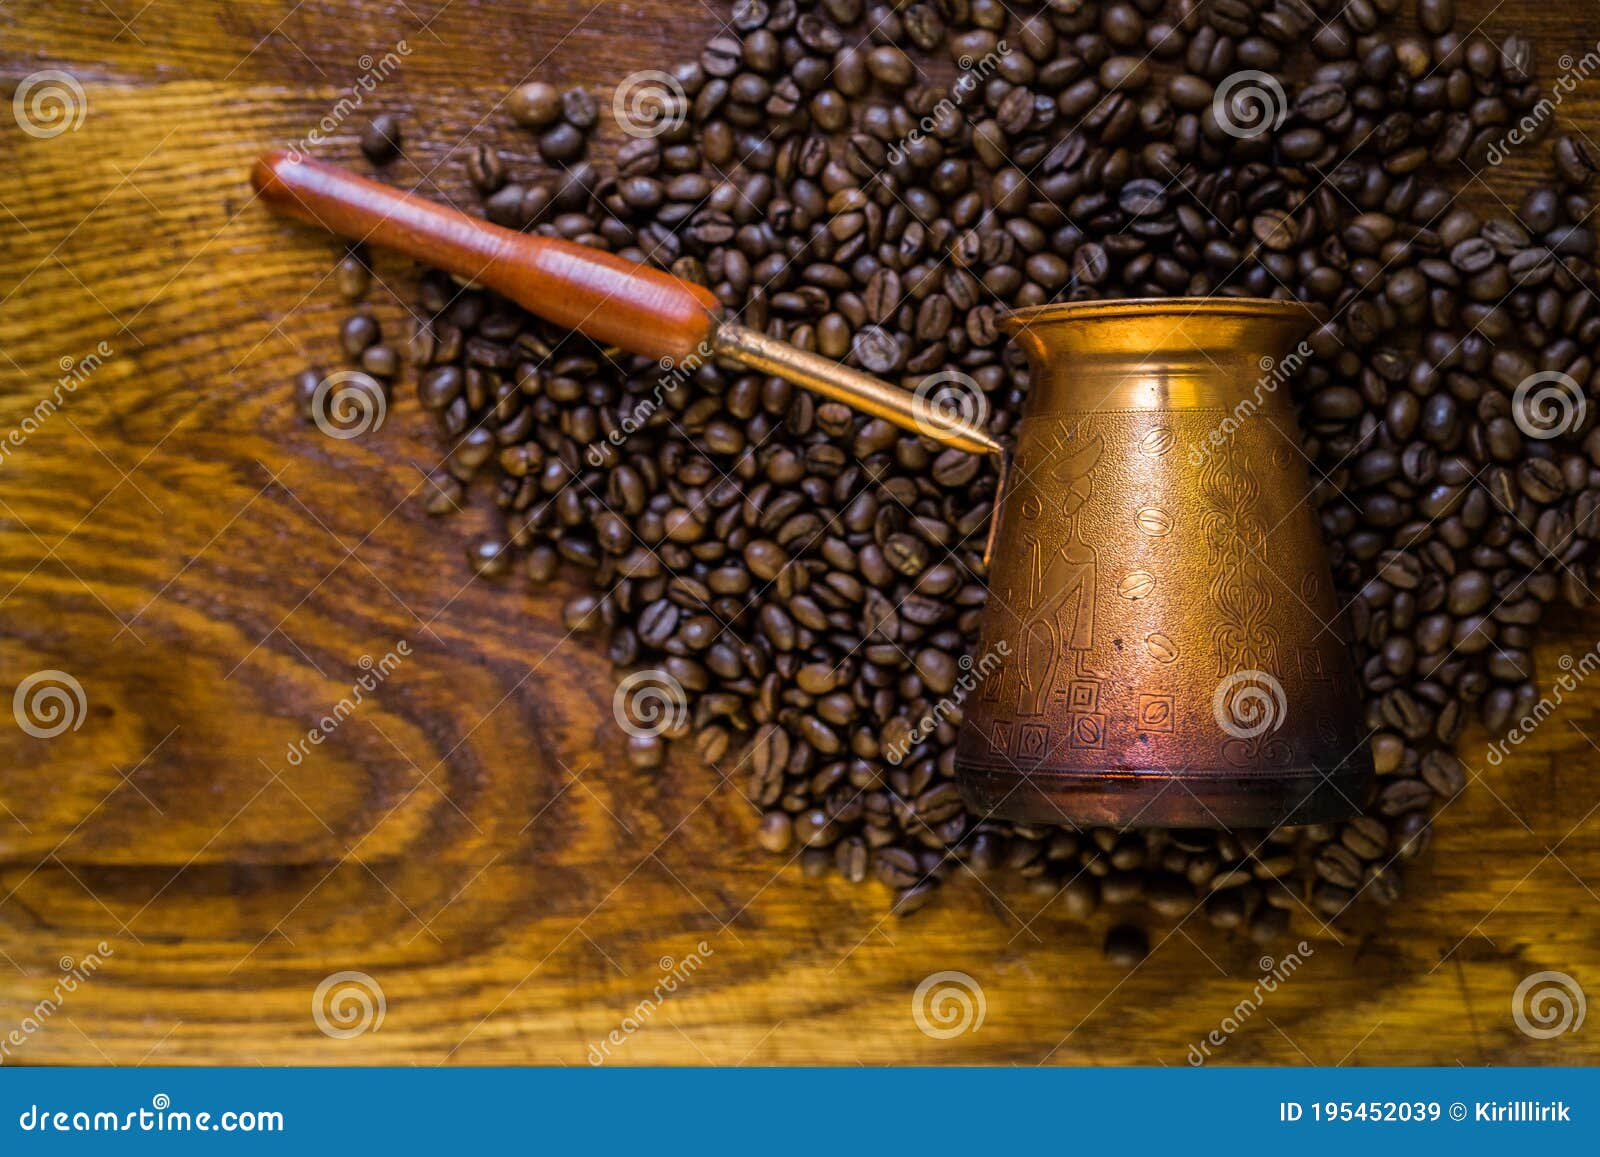 Copper Turkish Coffee Grinder